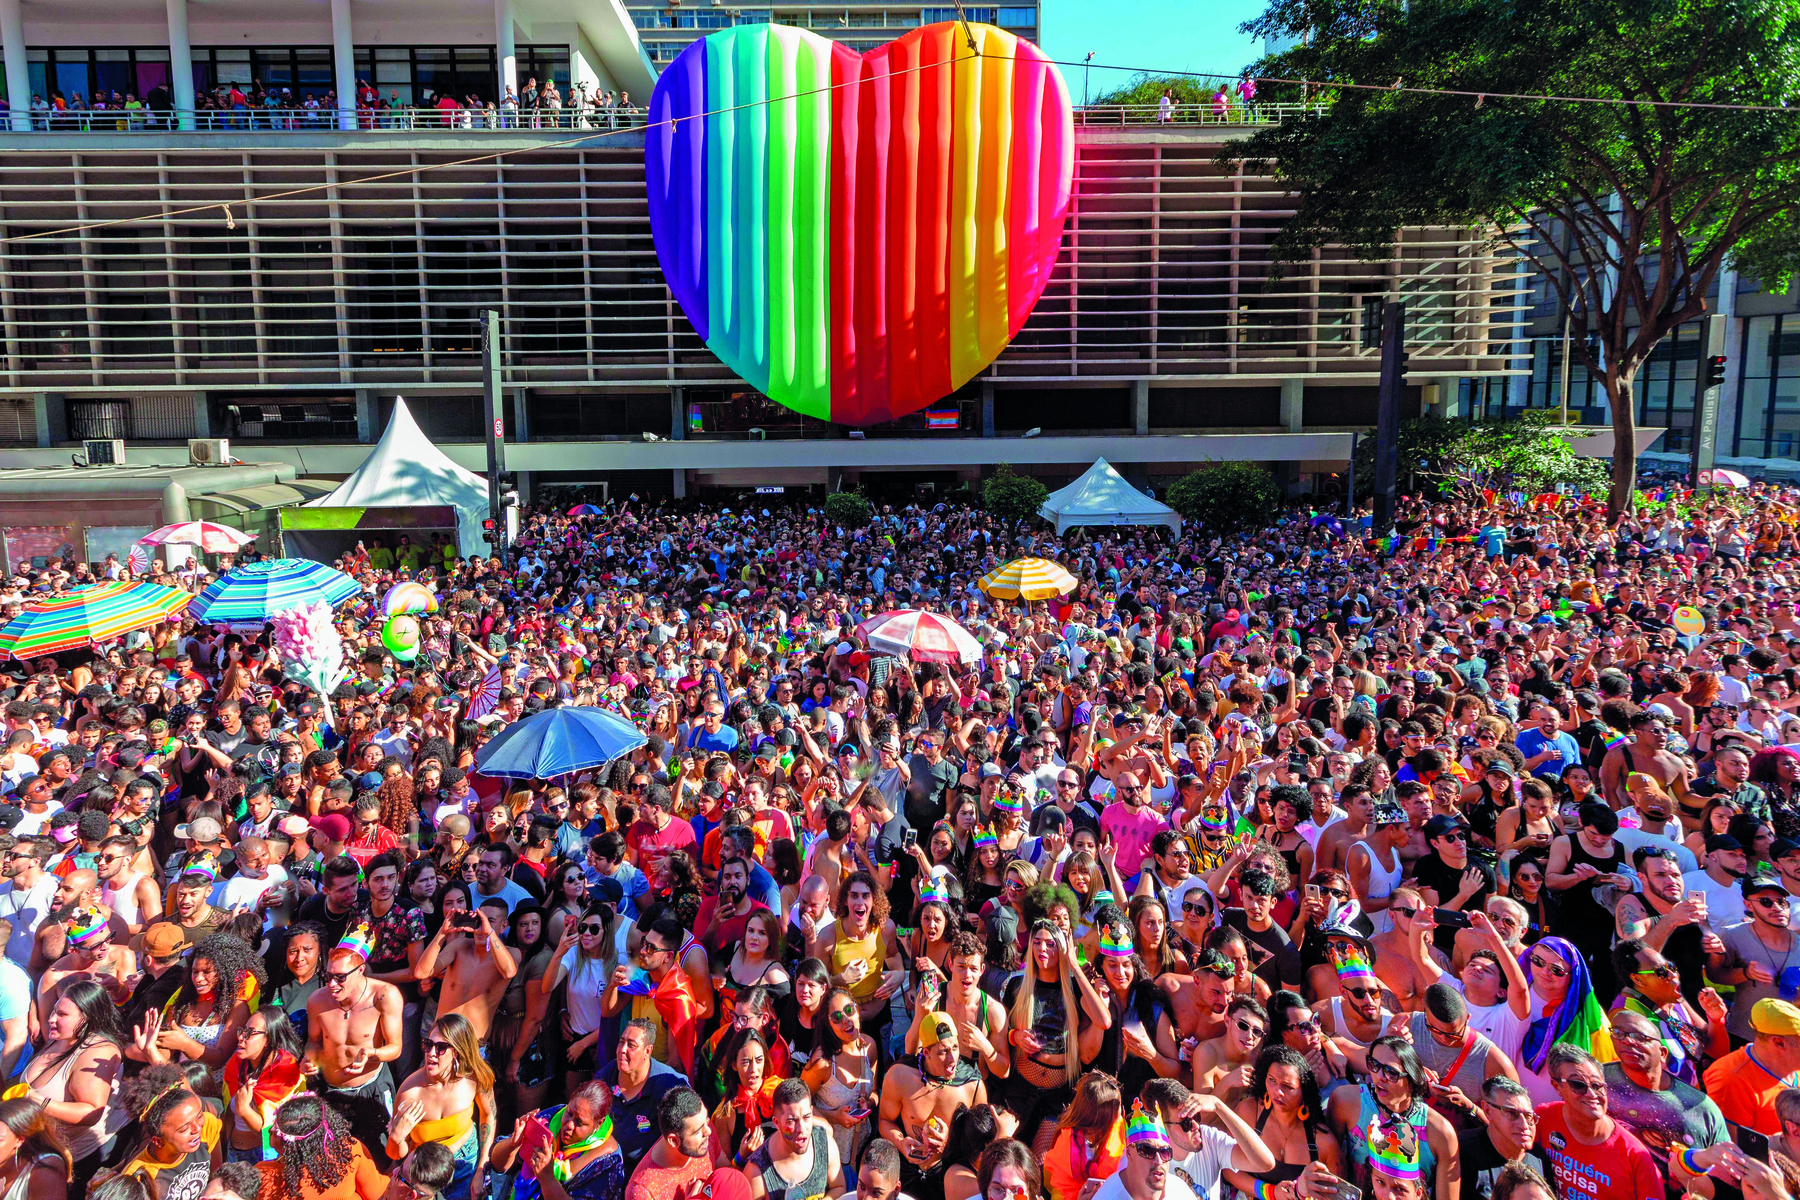 Fotografia. Multidão com adereços coloridos em desfile do Orgulho LGBTQIA+. Ao fundo, um enorme coração colorido inflável pendurado em um prédio horizontal.